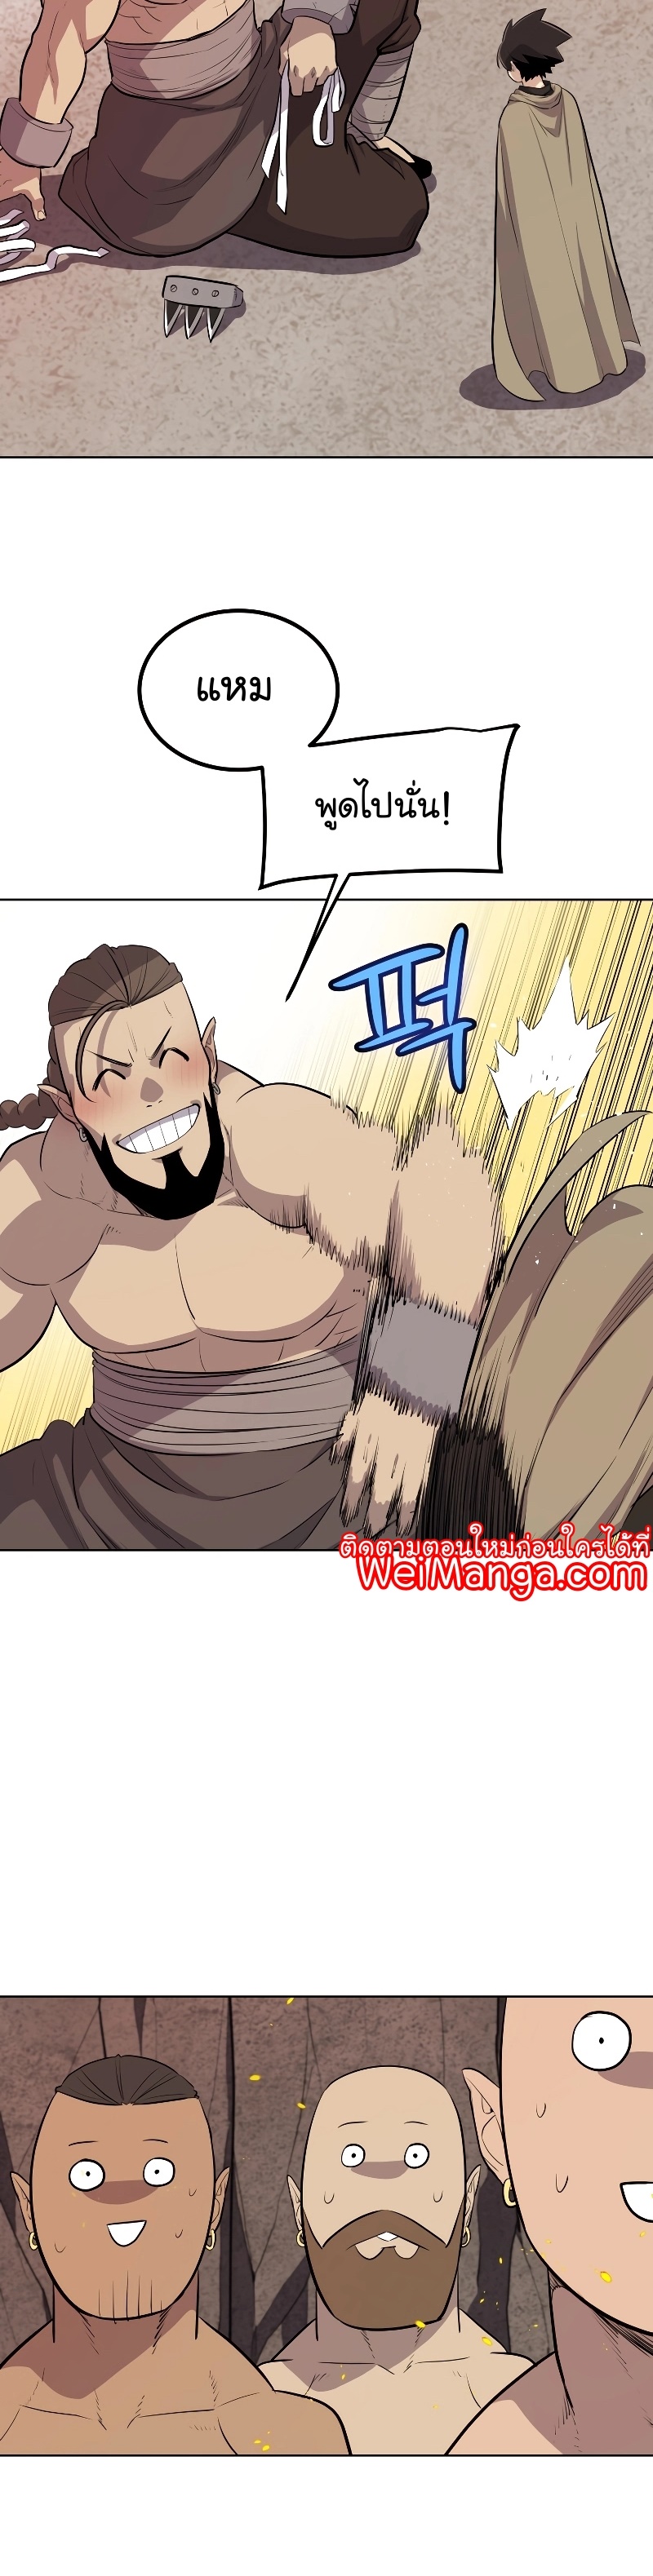 Overpowered Sword Wei Manga Manhwa 91 (39)